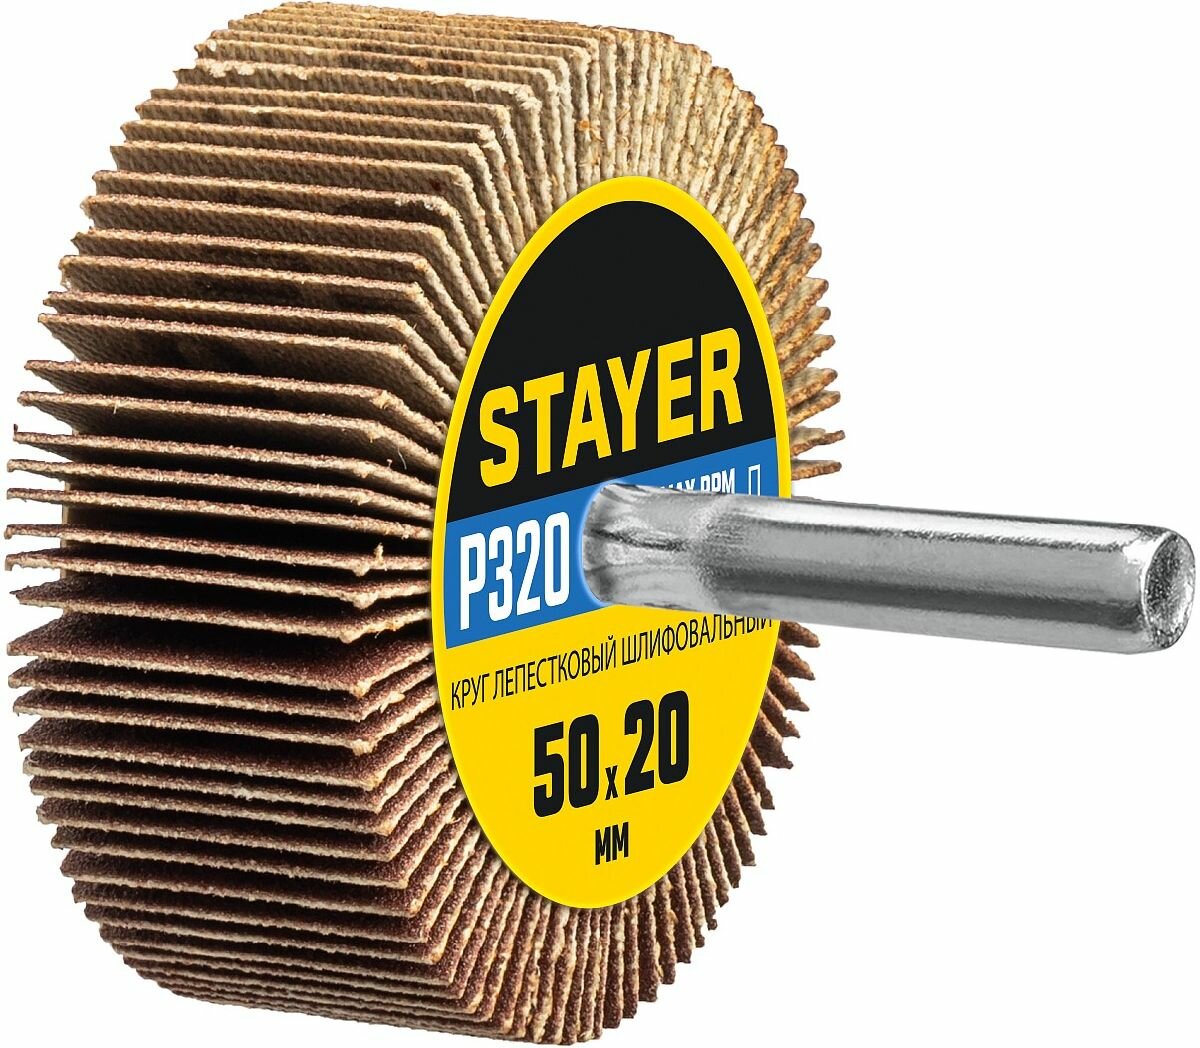 STAYER d 50x20 мм P320 круг шлифовальный лепестковый на шпильке (36607-320)